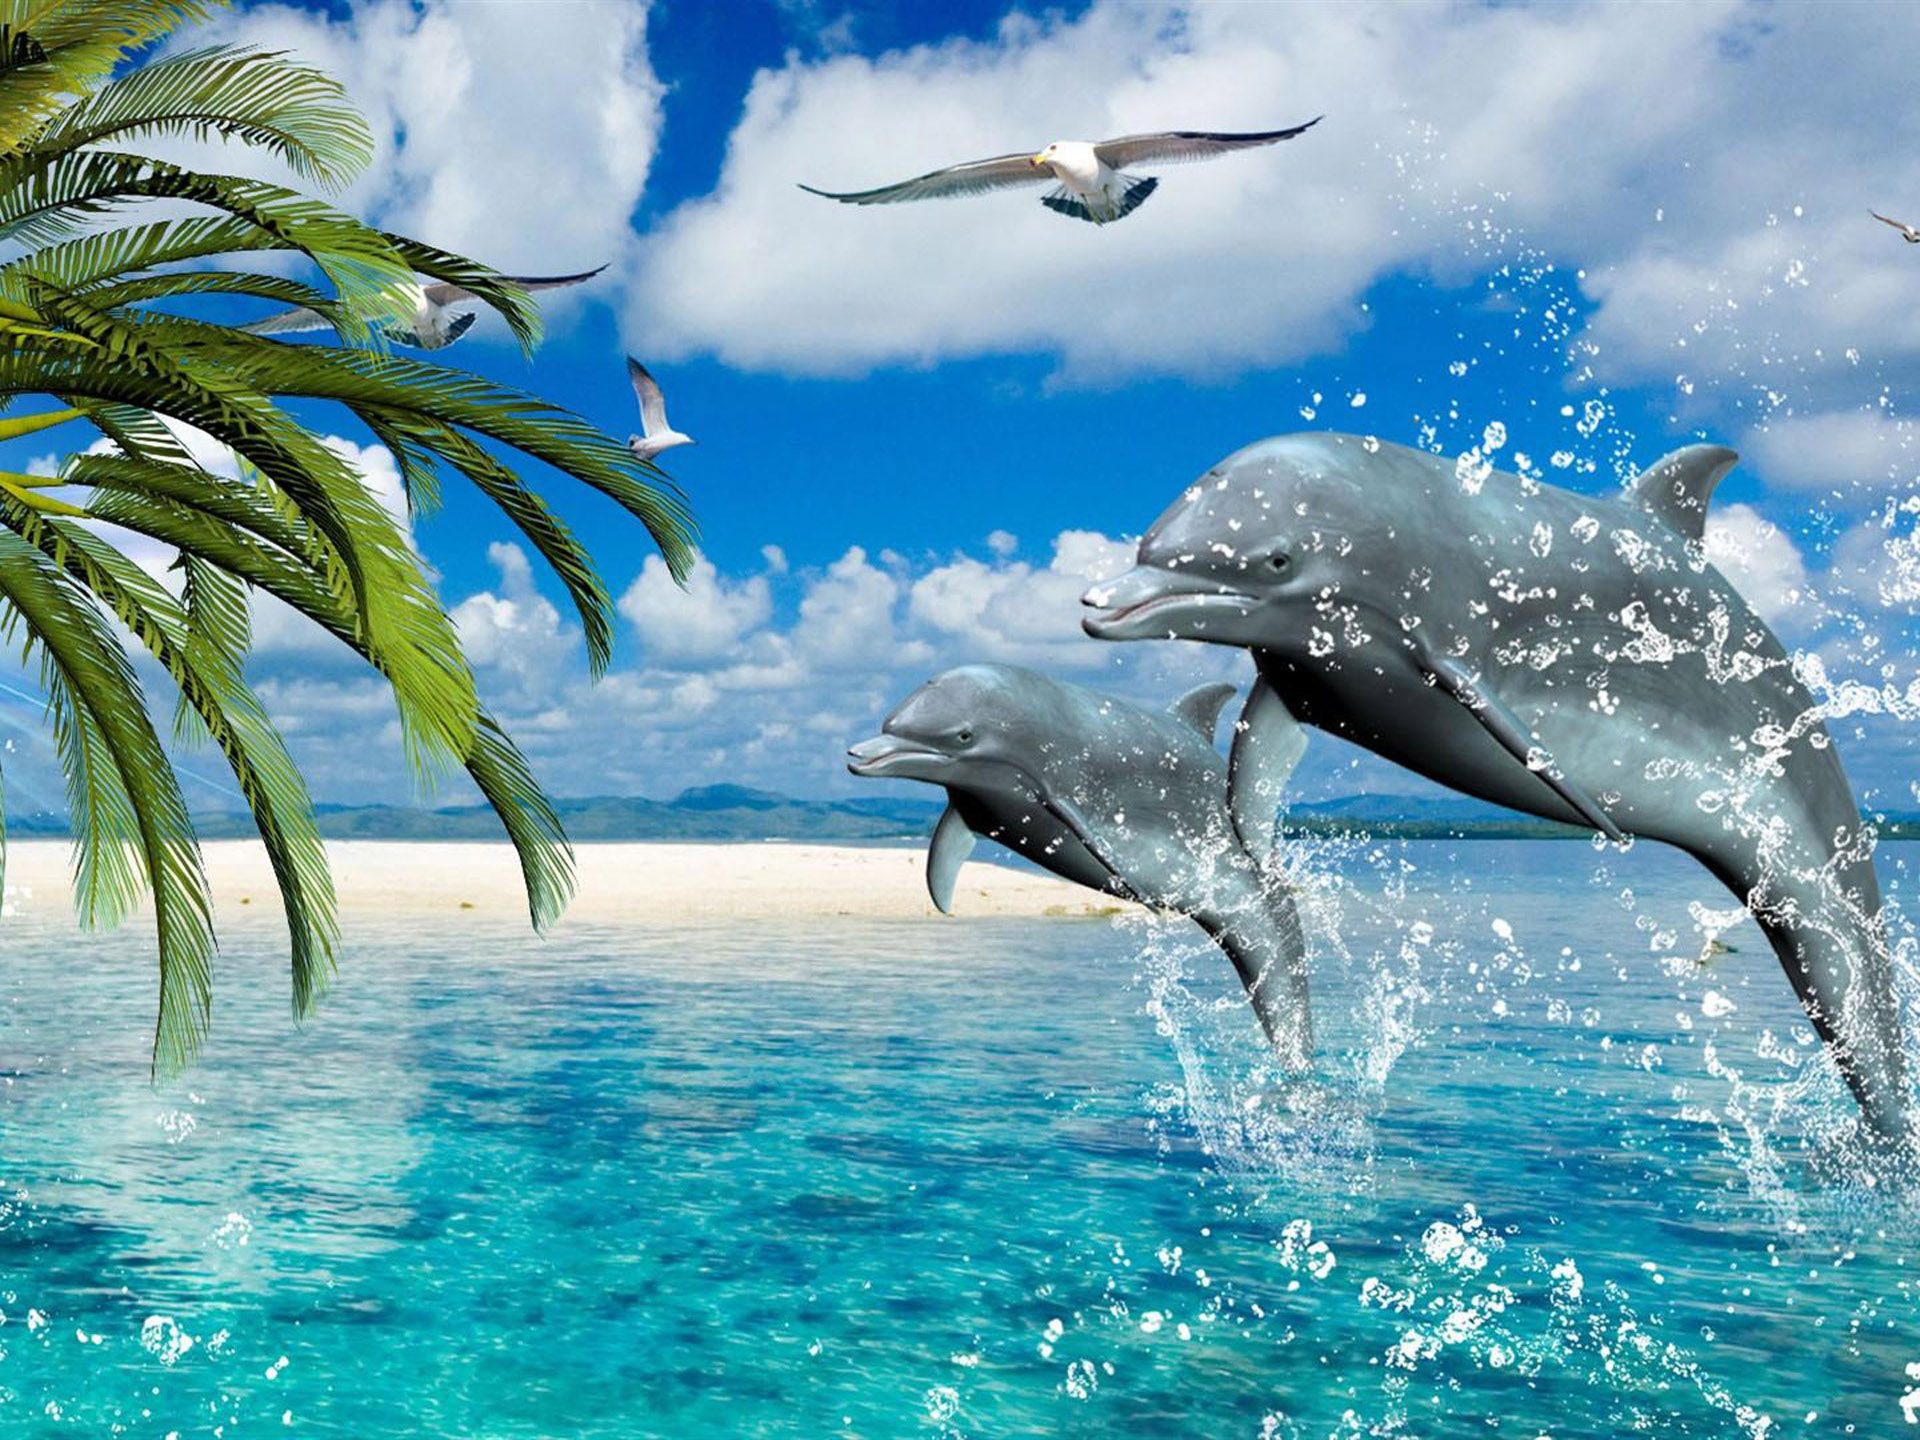 delphin iphone wallpaper,delfin,tümmler,gemeiner tümmler,kurzschnabel delphin,meeressäugetier